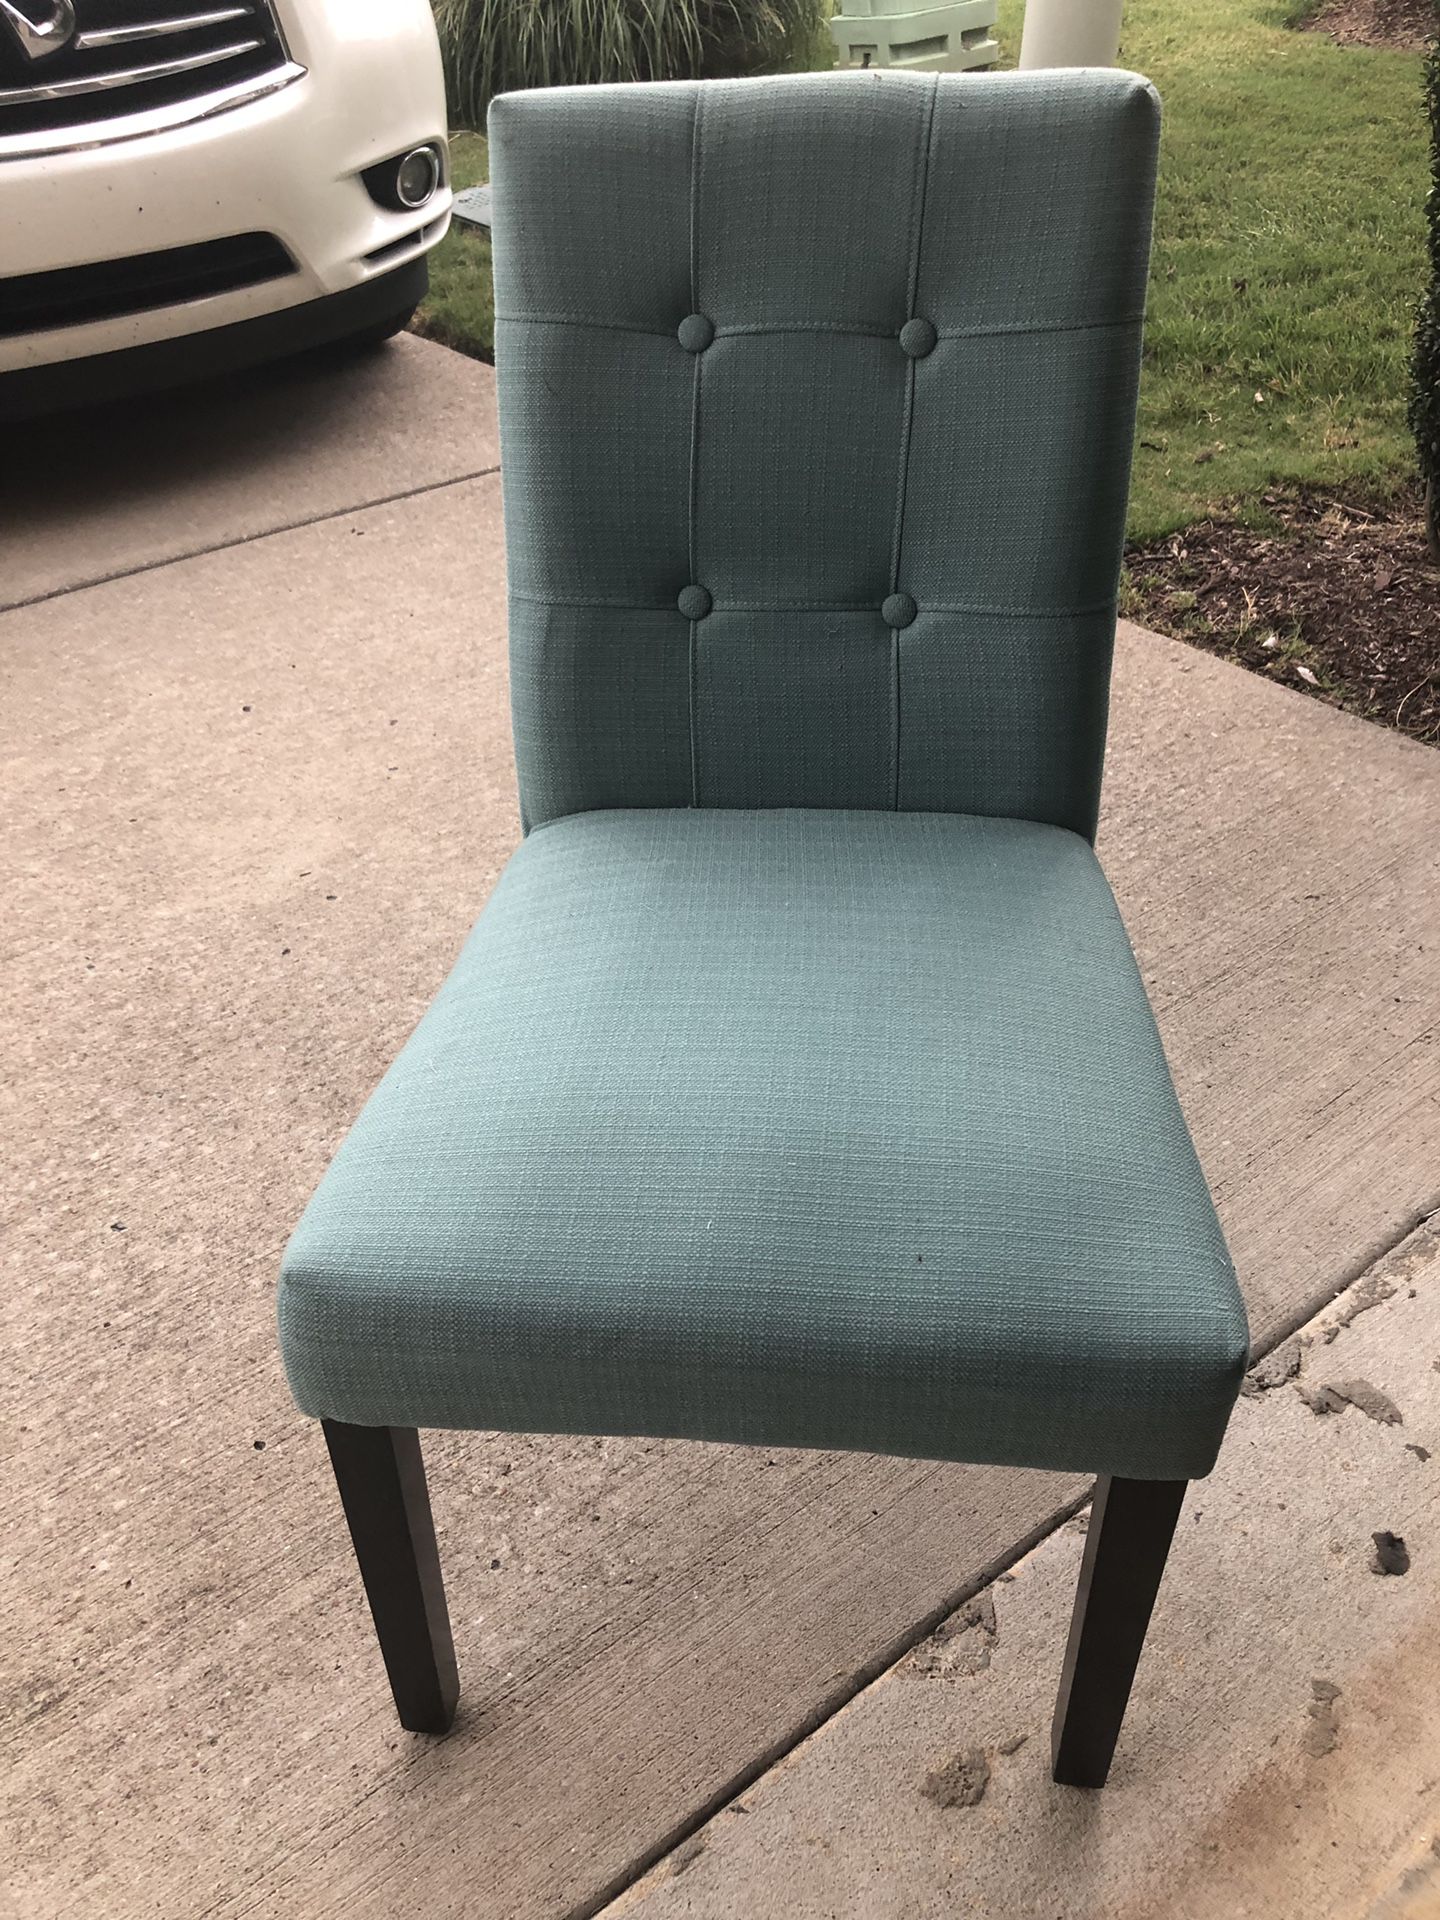 Blue green chair